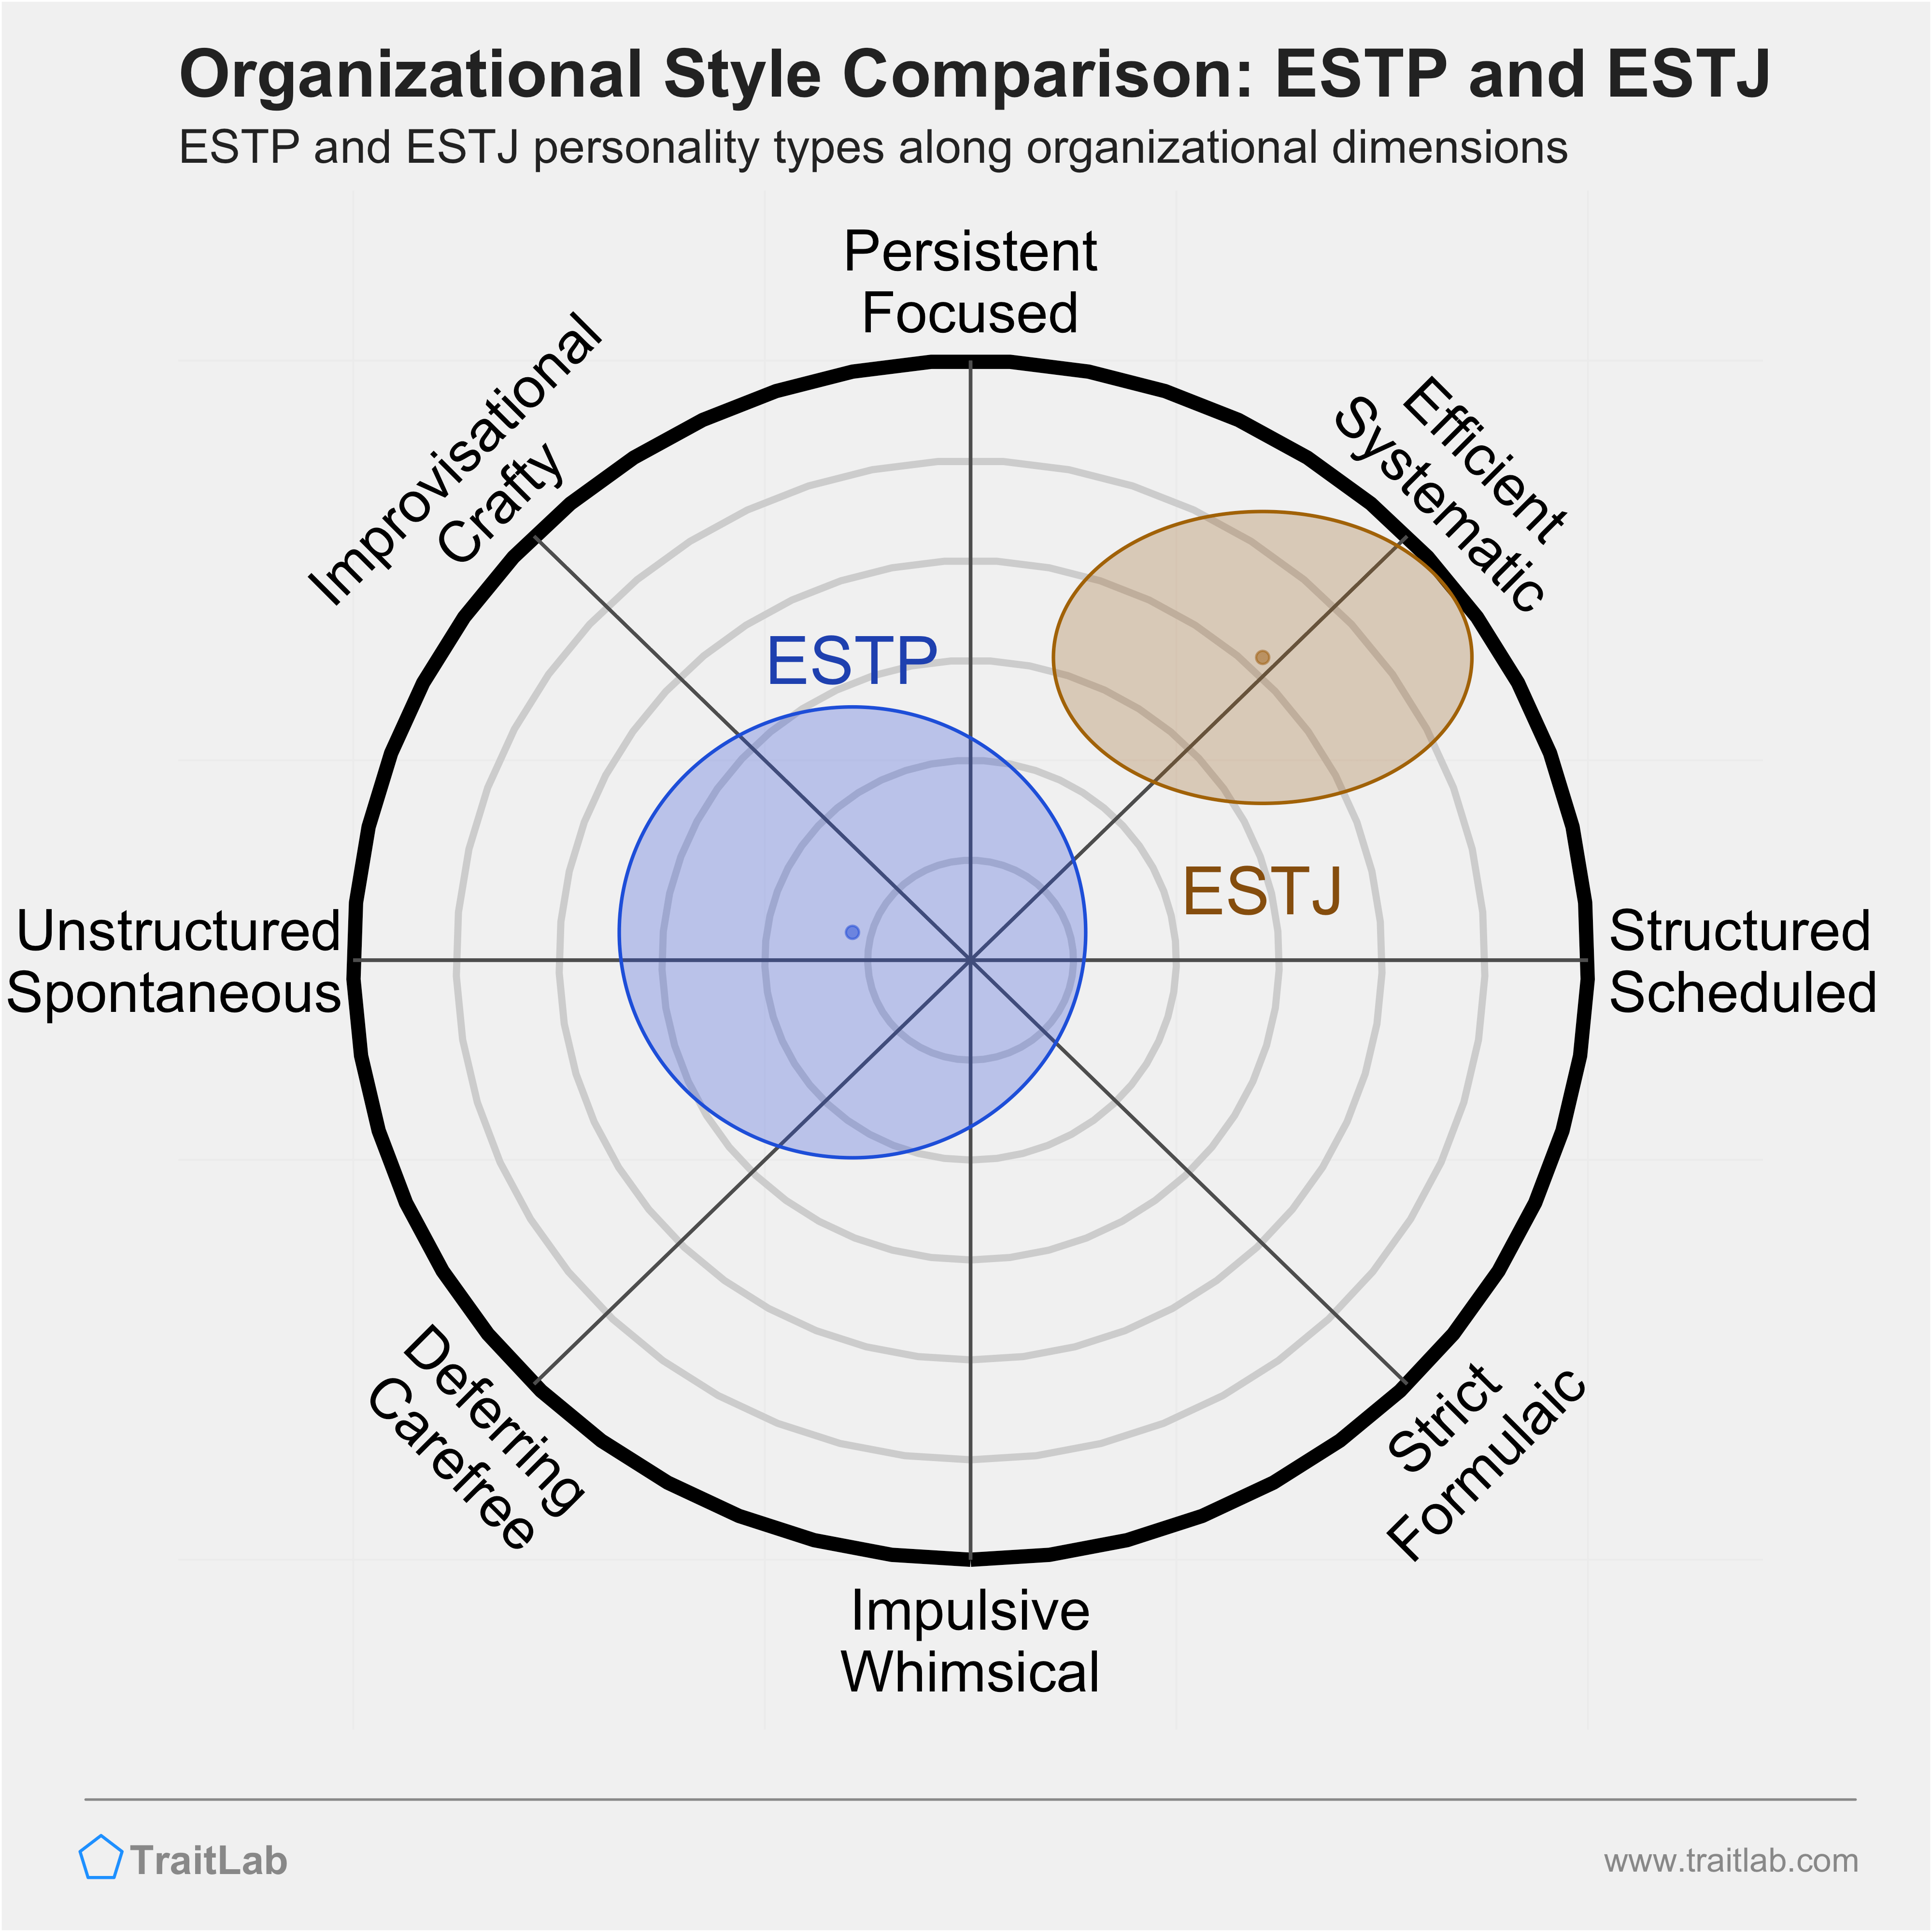 ESTP and ESTJ comparison across organizational dimensions